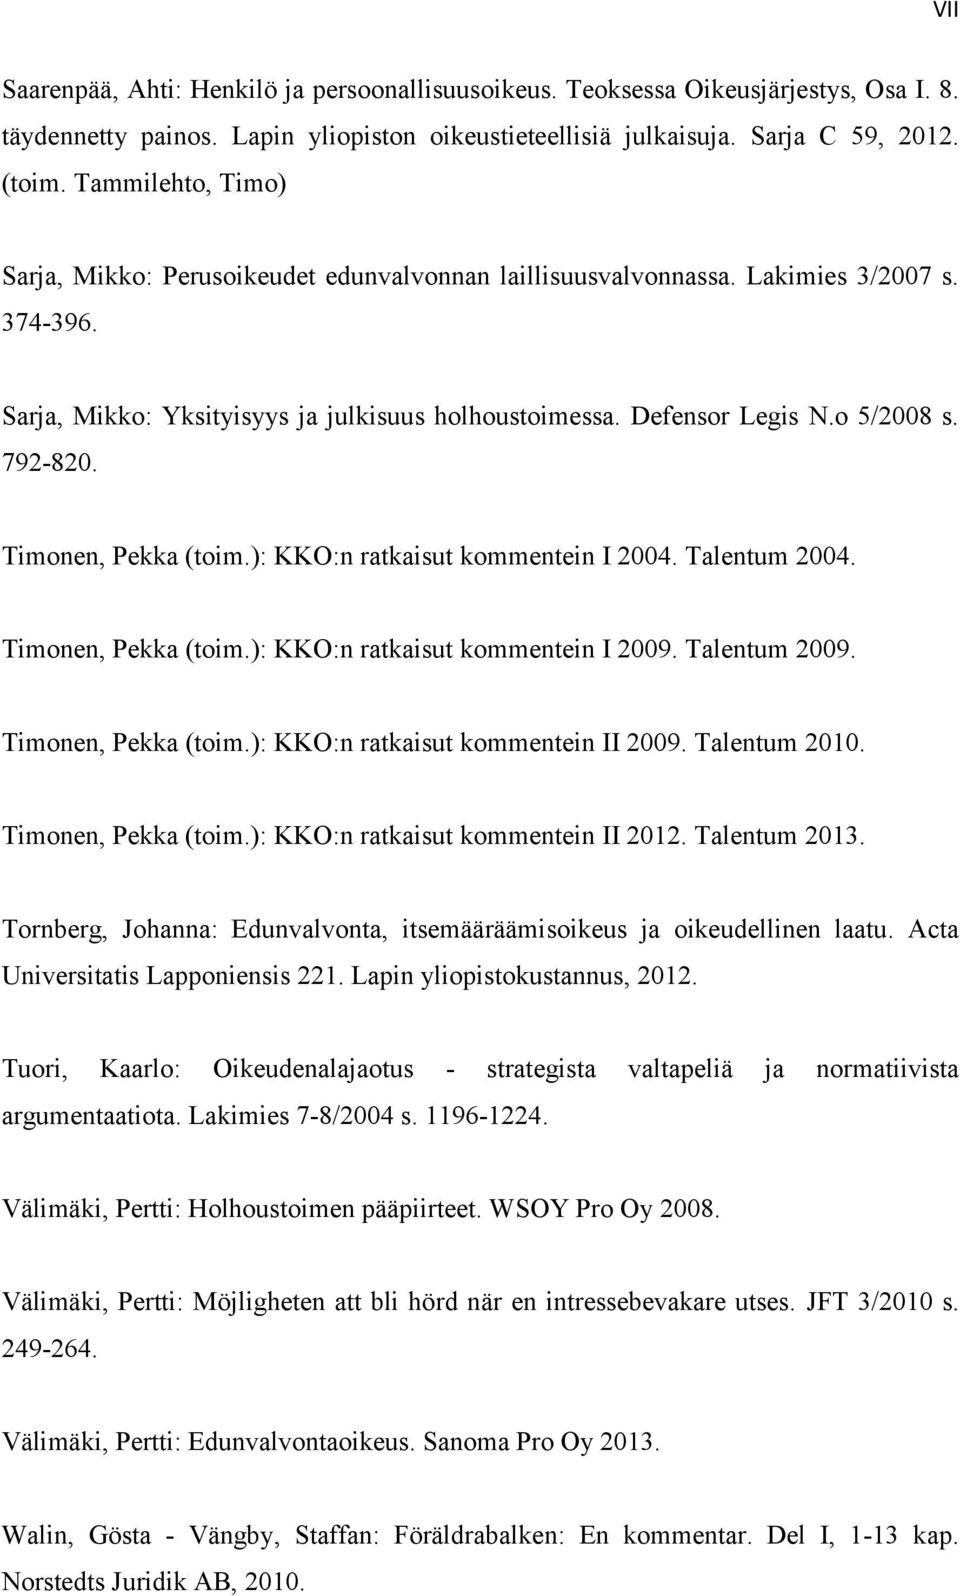 792-820. Timonen, Pekka (toim.): KKO:n ratkaisut kommentein I 2004. Talentum 2004. Timonen, Pekka (toim.): KKO:n ratkaisut kommentein I 2009. Talentum 2009. Timonen, Pekka (toim.): KKO:n ratkaisut kommentein II 2009.